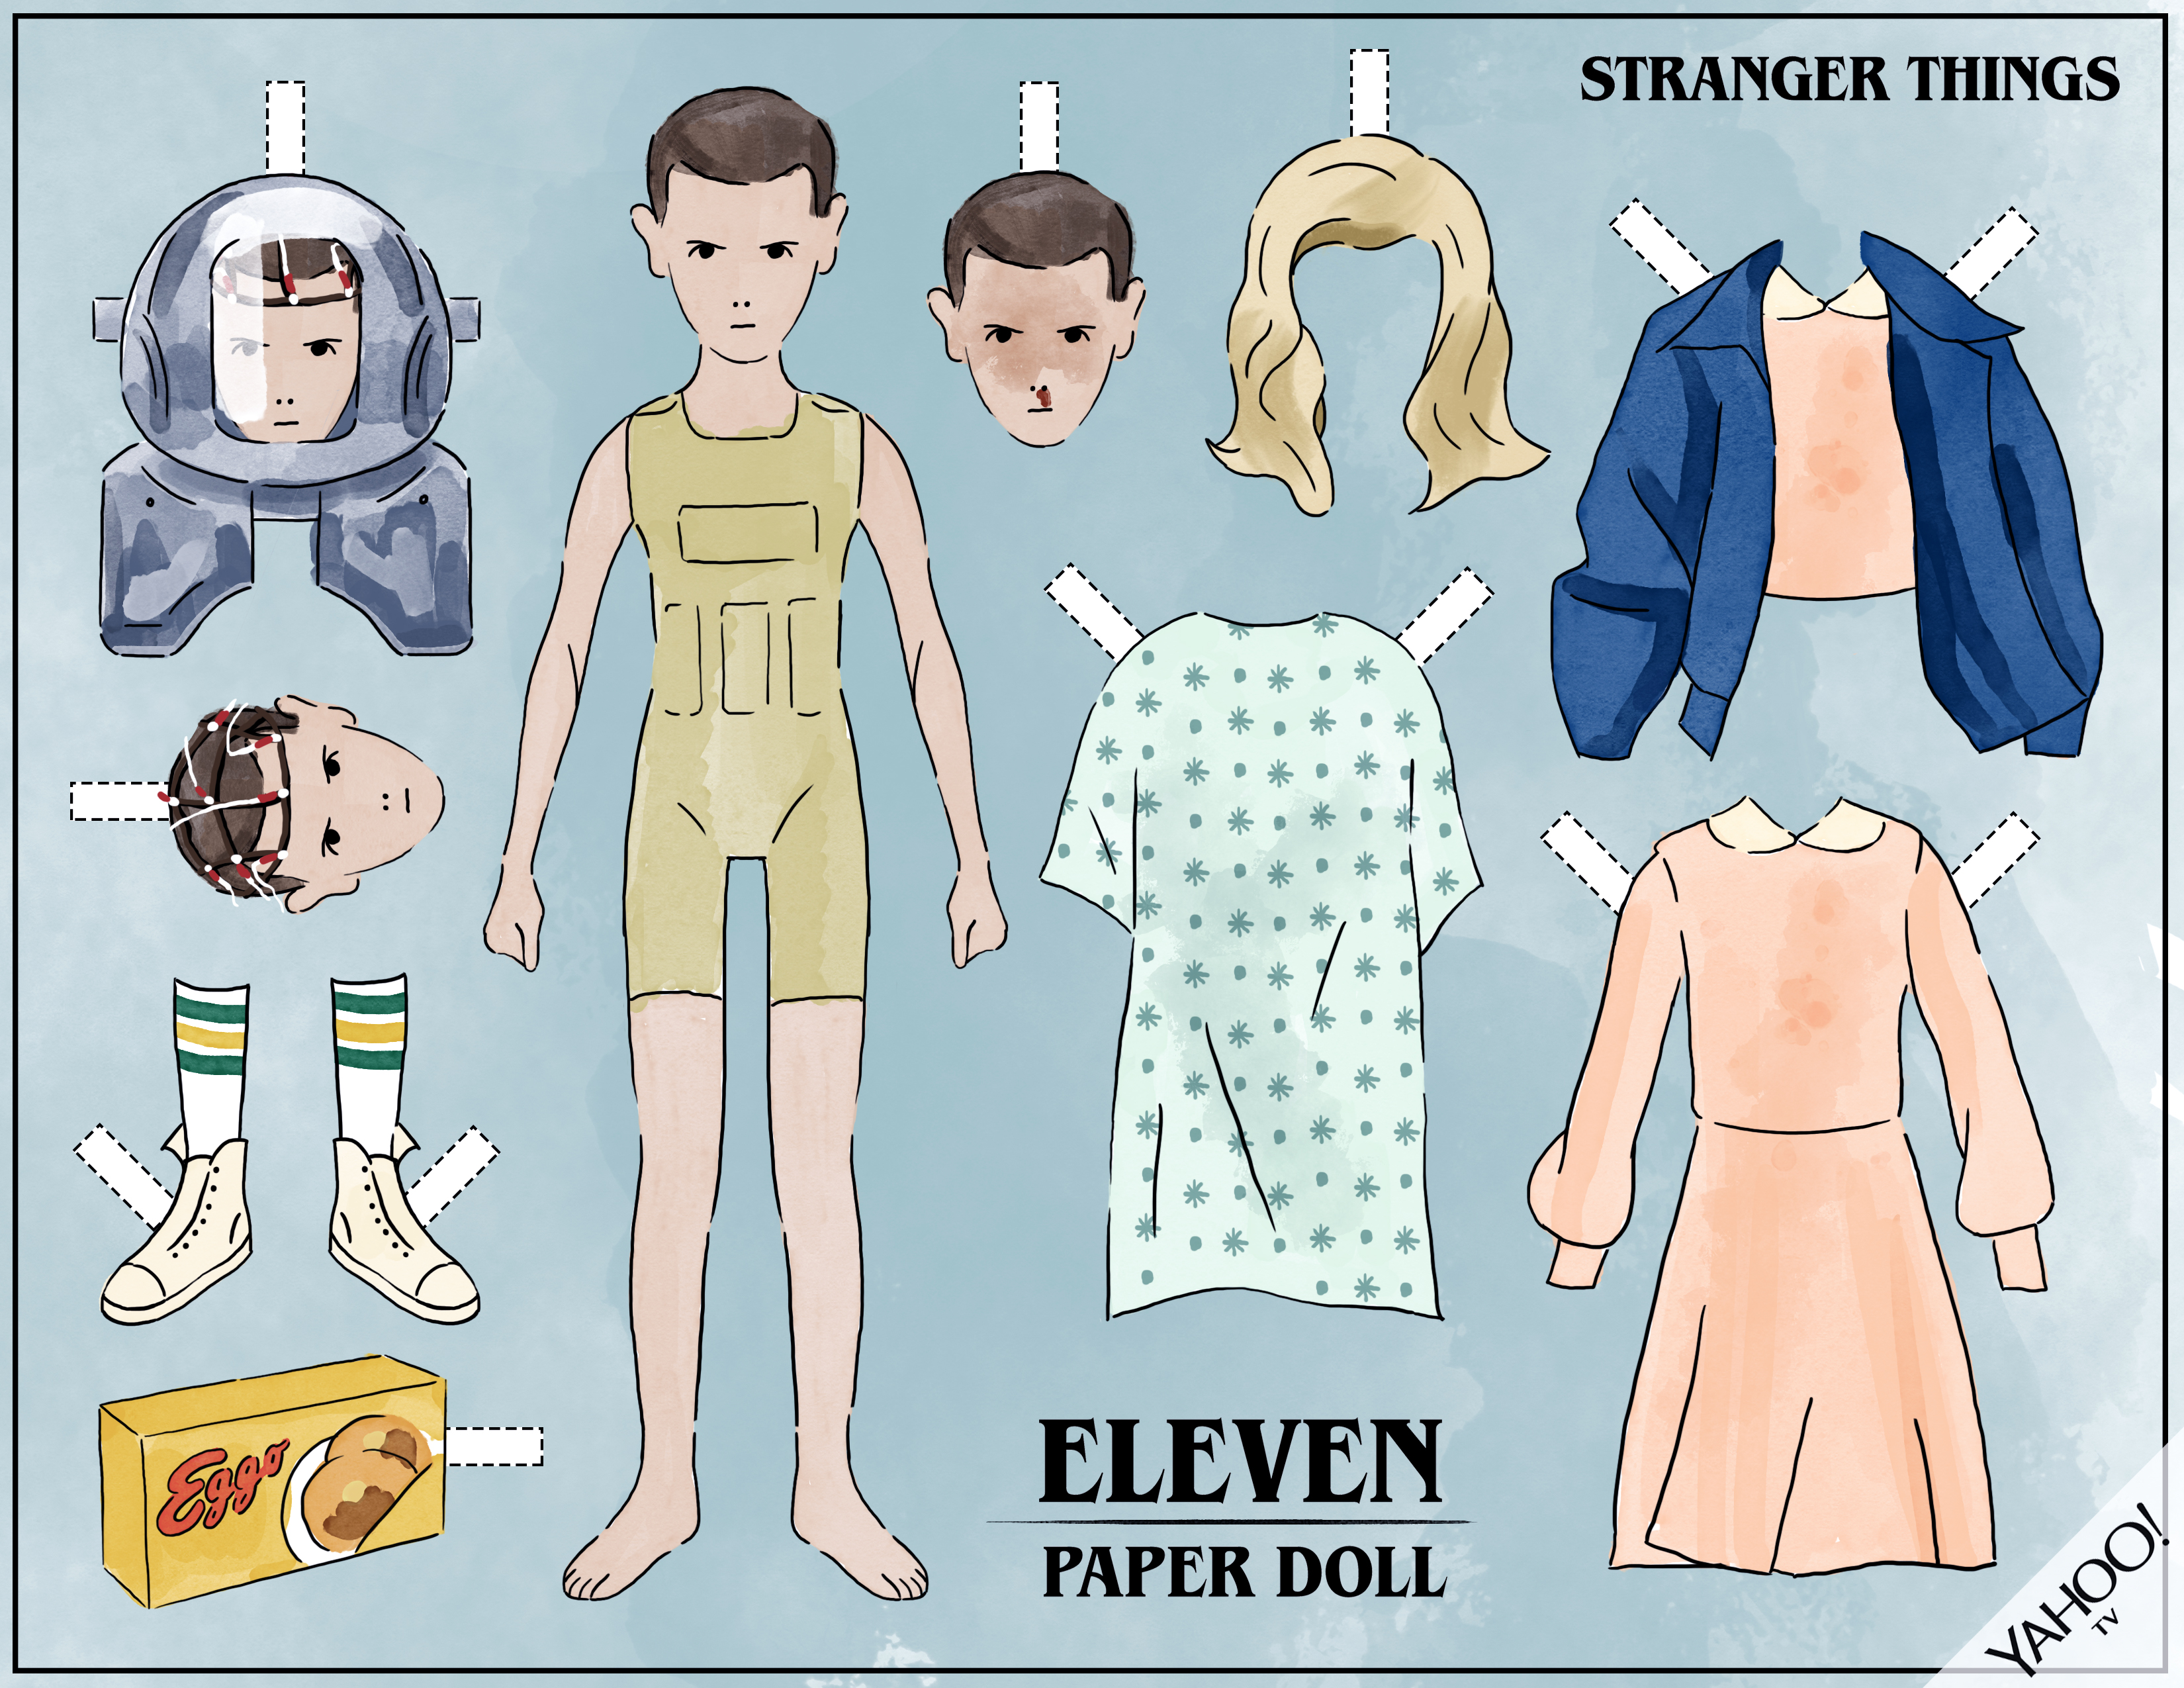 eleven doll stranger things